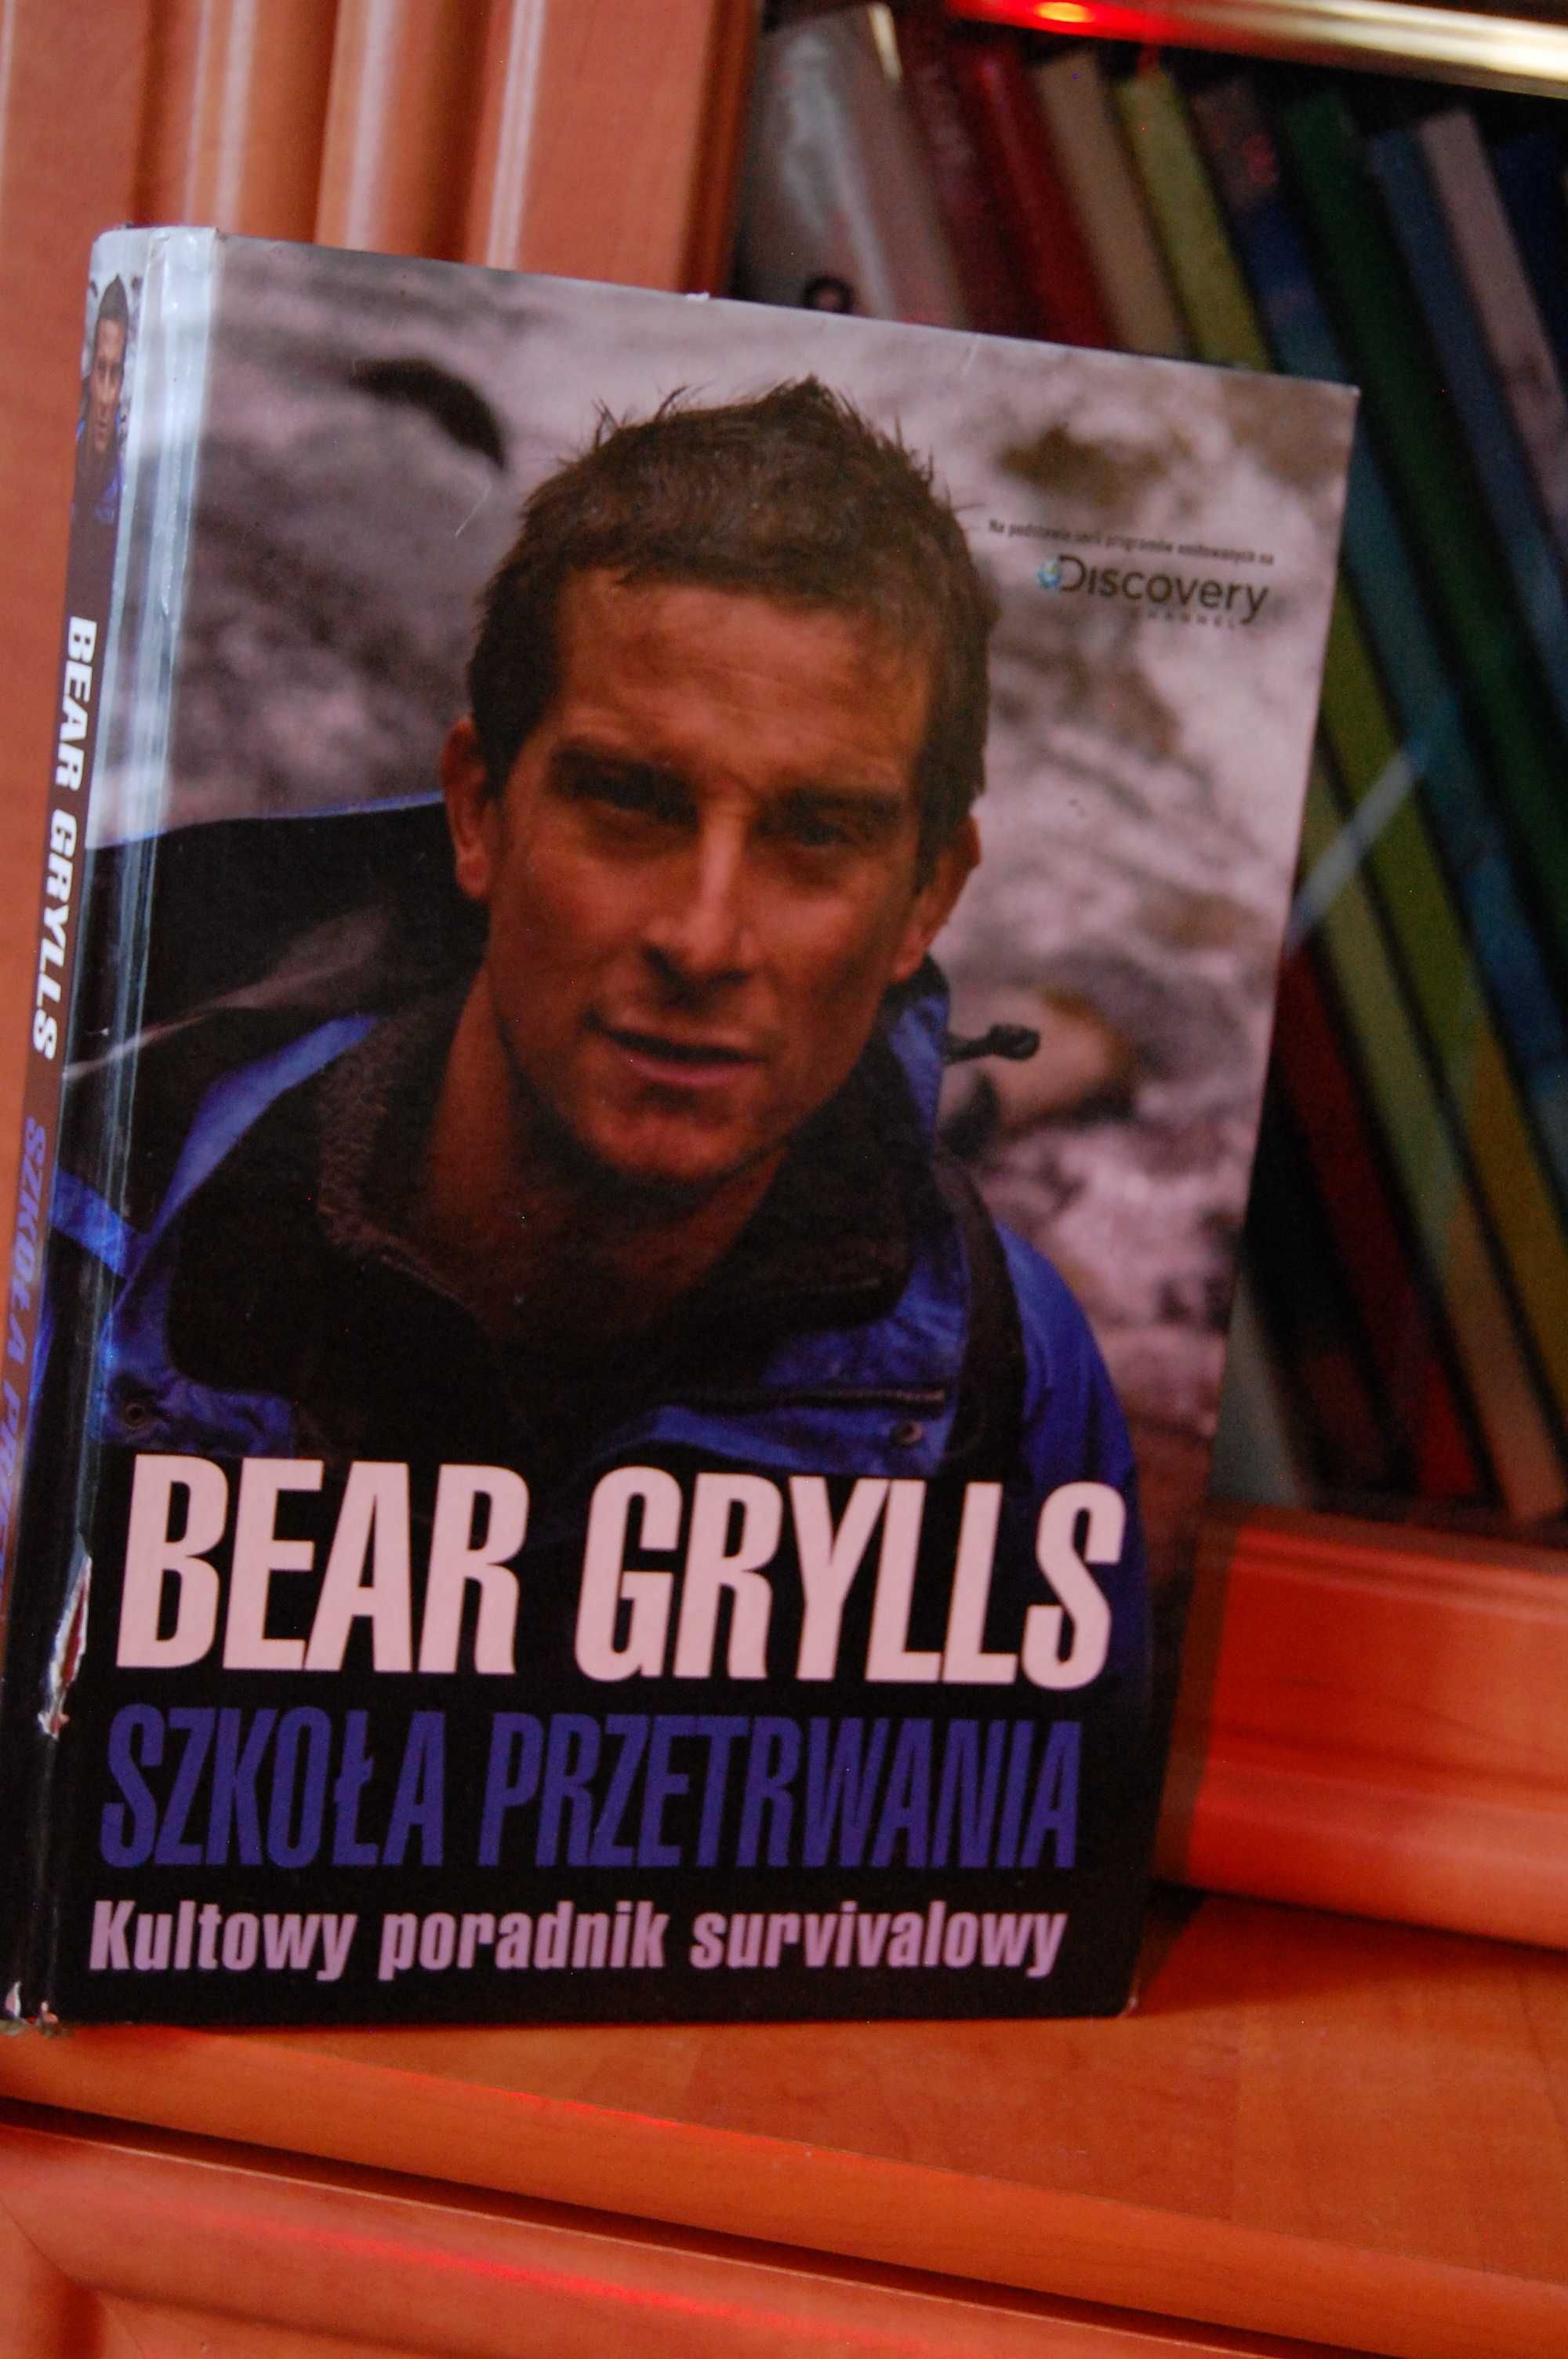 Bear Grylls - Szkoła przetrwania.Survival